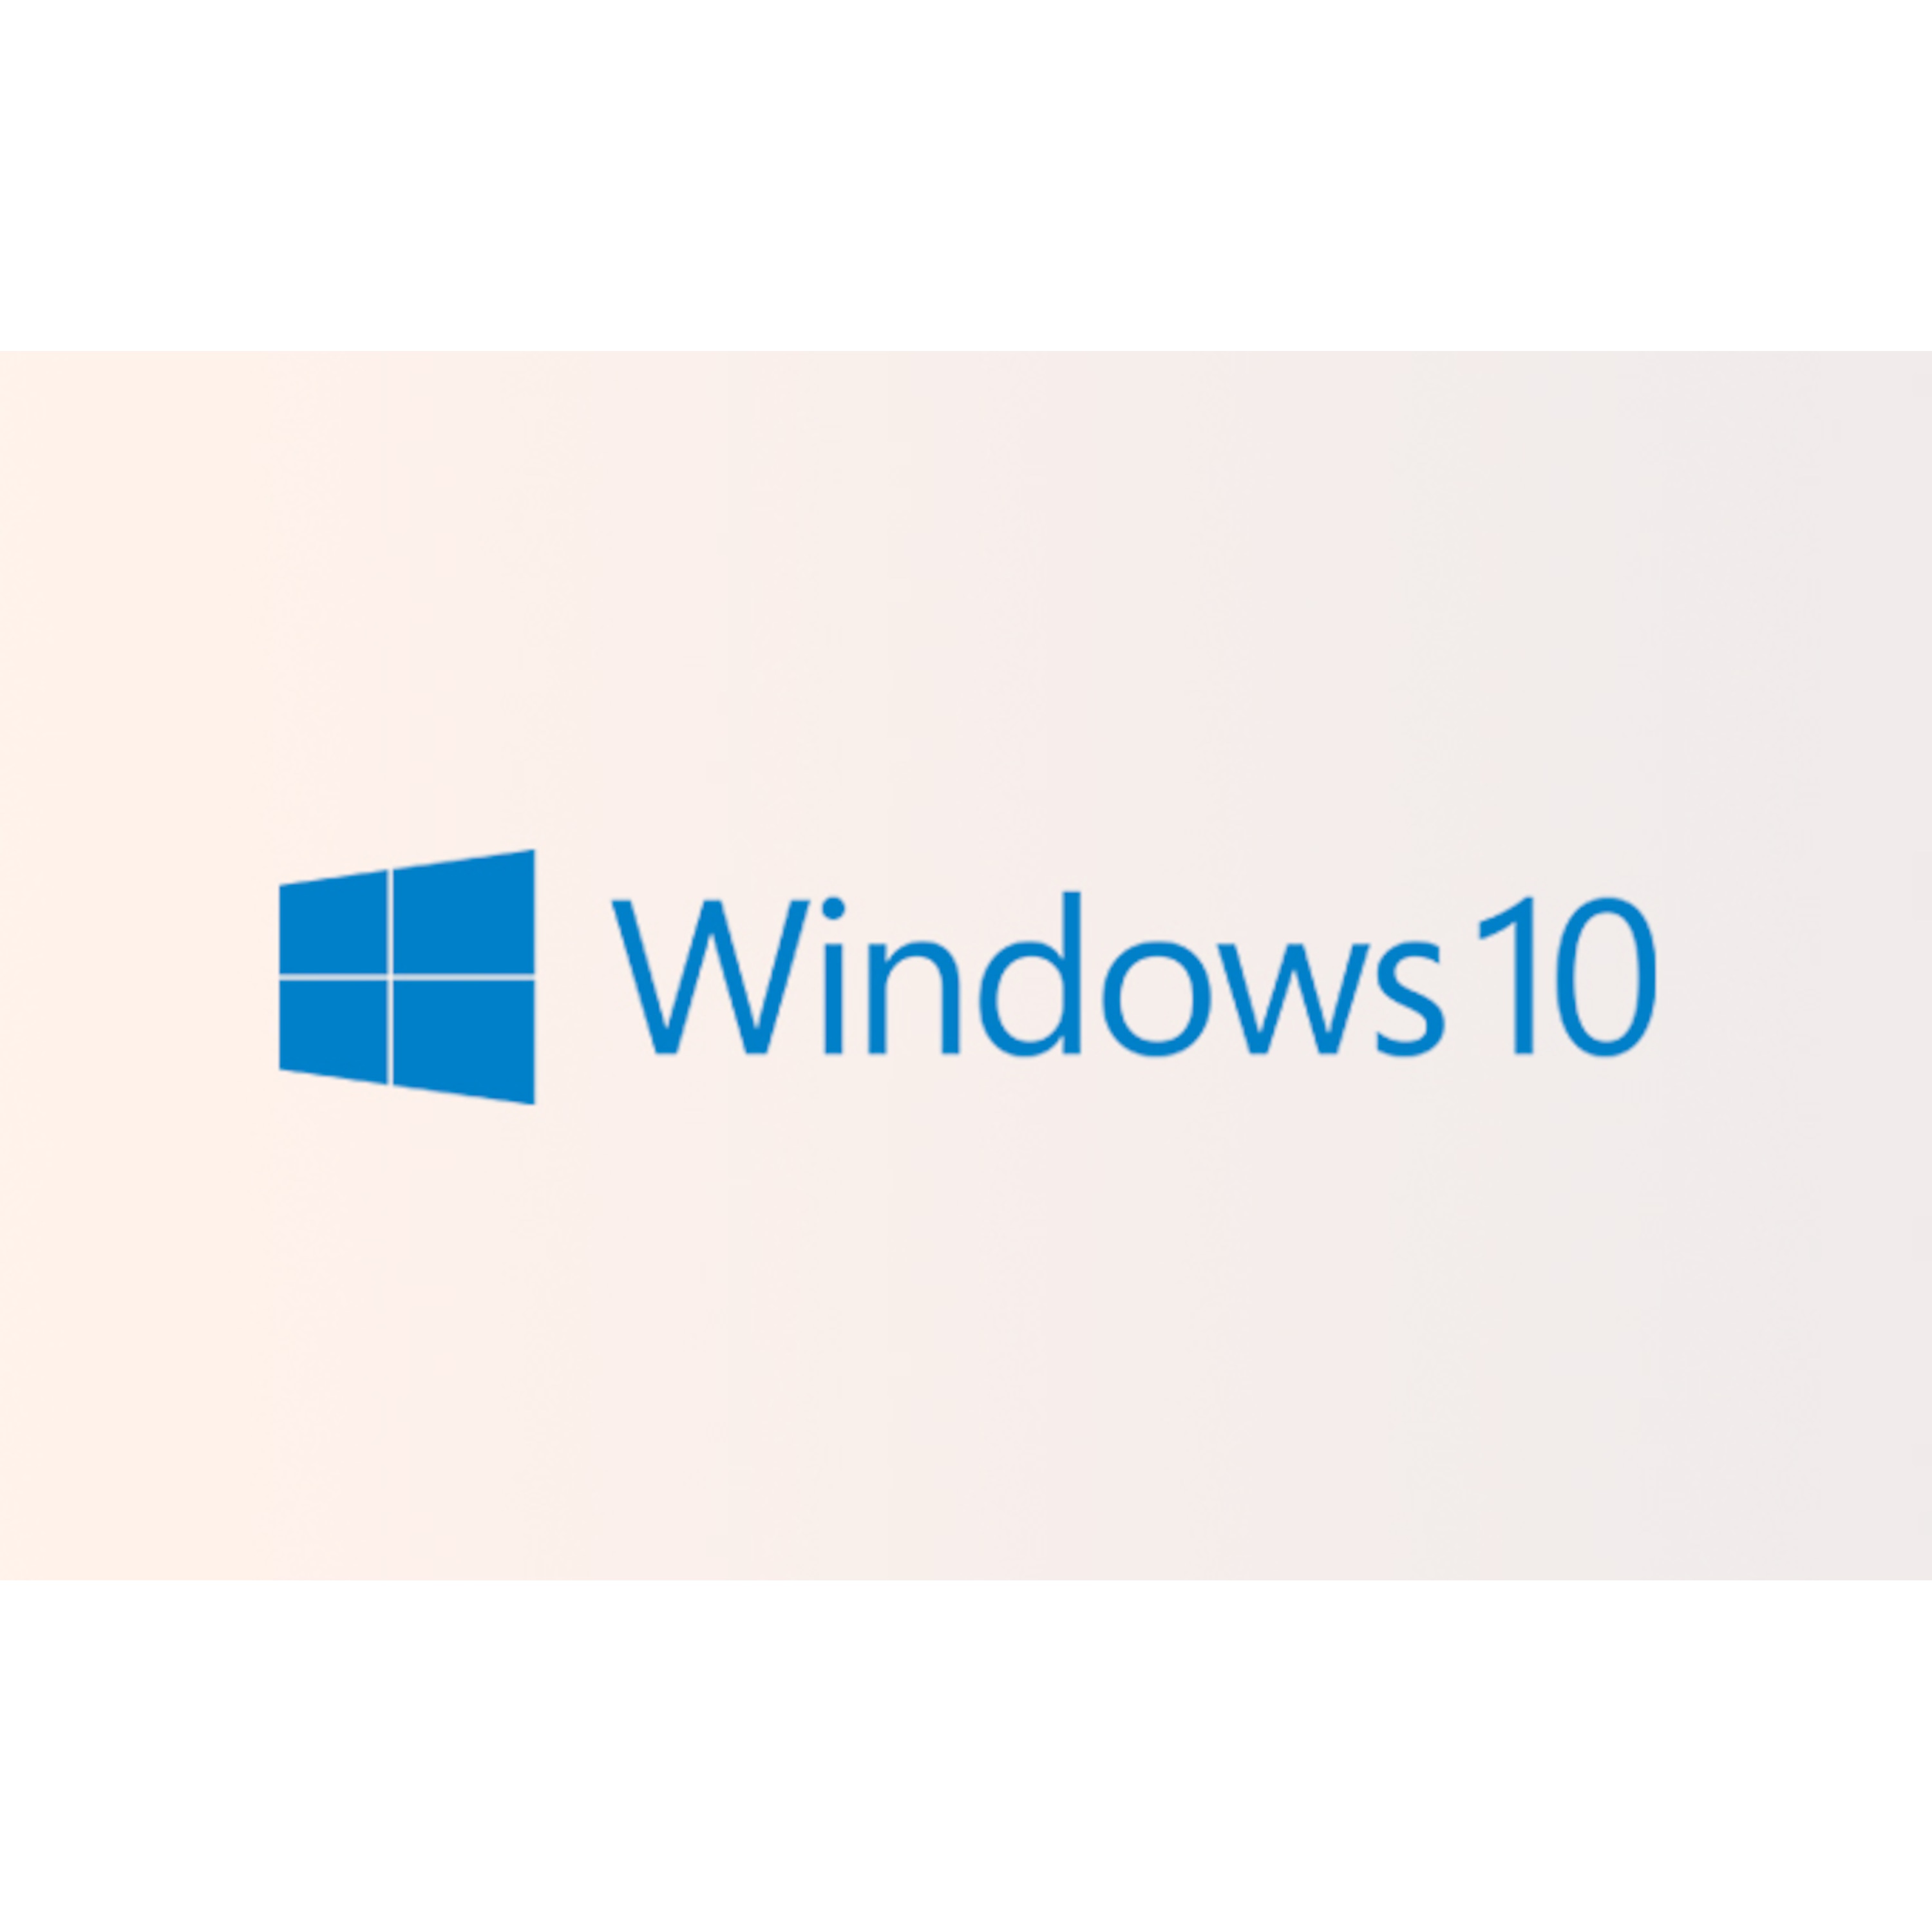 Windows 10 Home - Stelle höhere Erwartungen an einen neuen Computer.